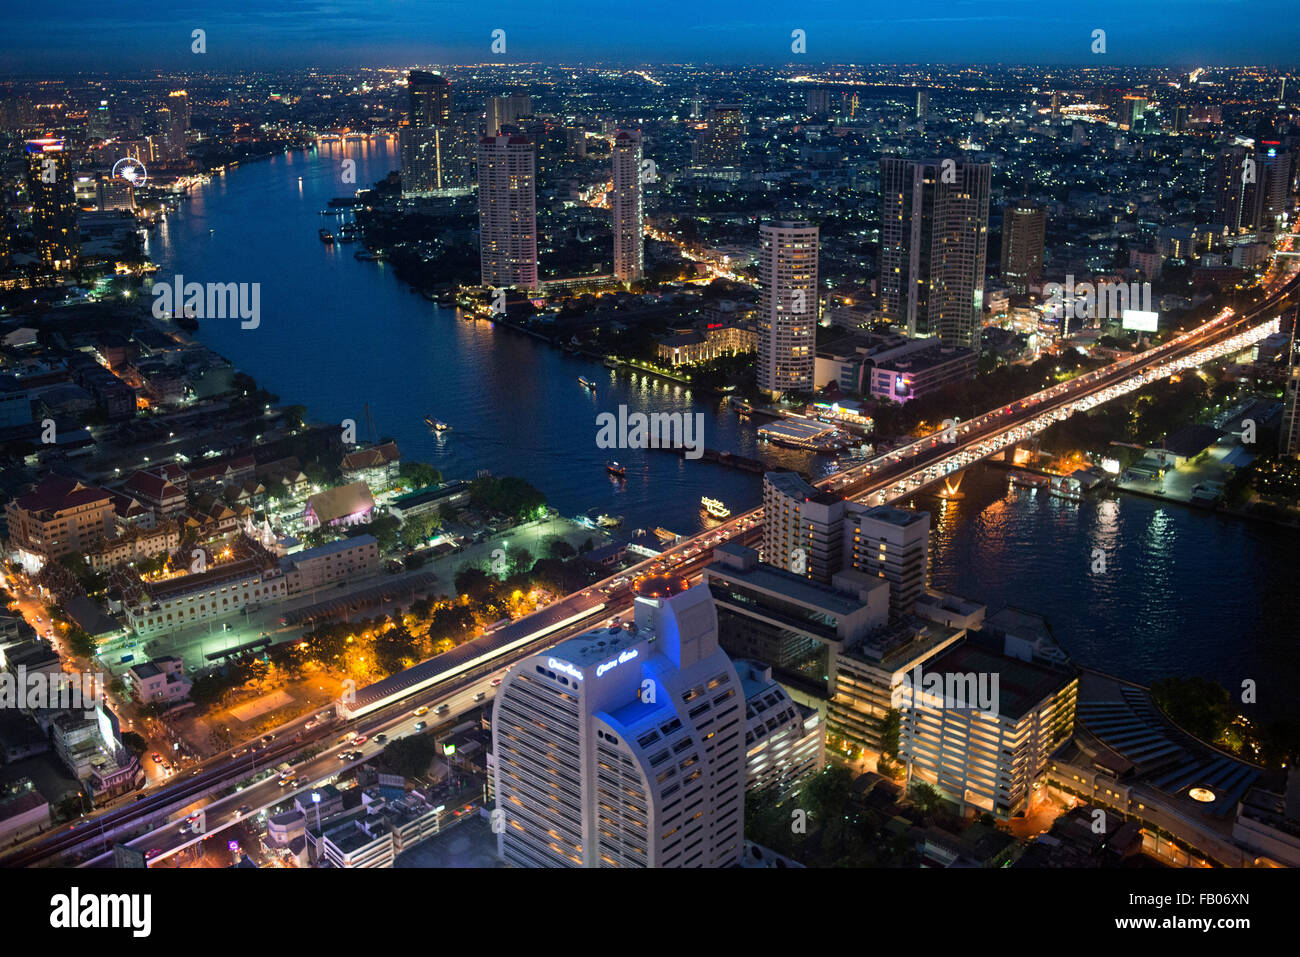 Panoramic viws and landcape of Bangkok from Sirocco rooftop. Thailand. Asia, Bangkok, capital, Centara Grand, Chao Praya River, Stock Photo